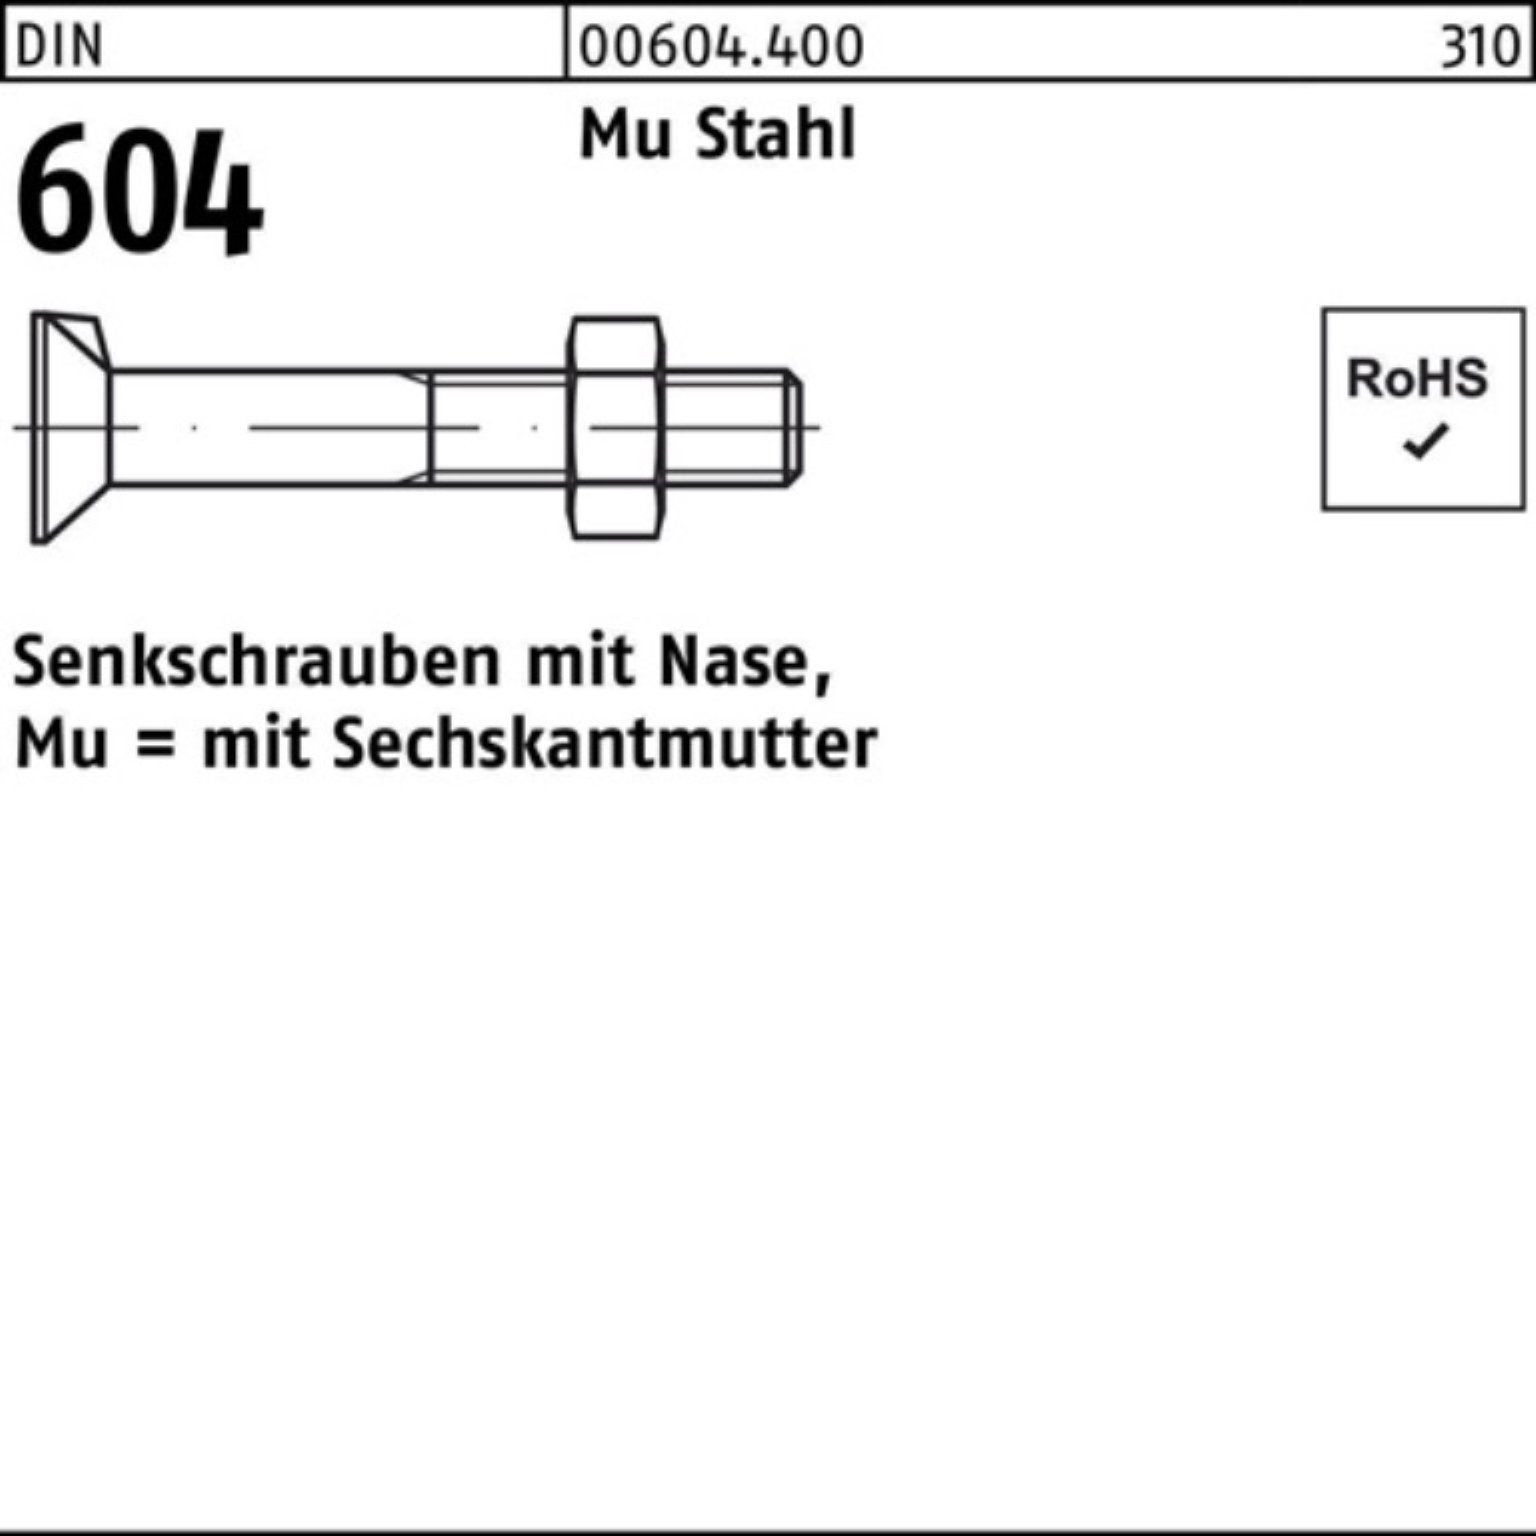 Reyher Senkschraube 100er Pack Senkschraube DIN 5 70 604 4.6 M12x Stahl Mu Nase/6-ktmutter